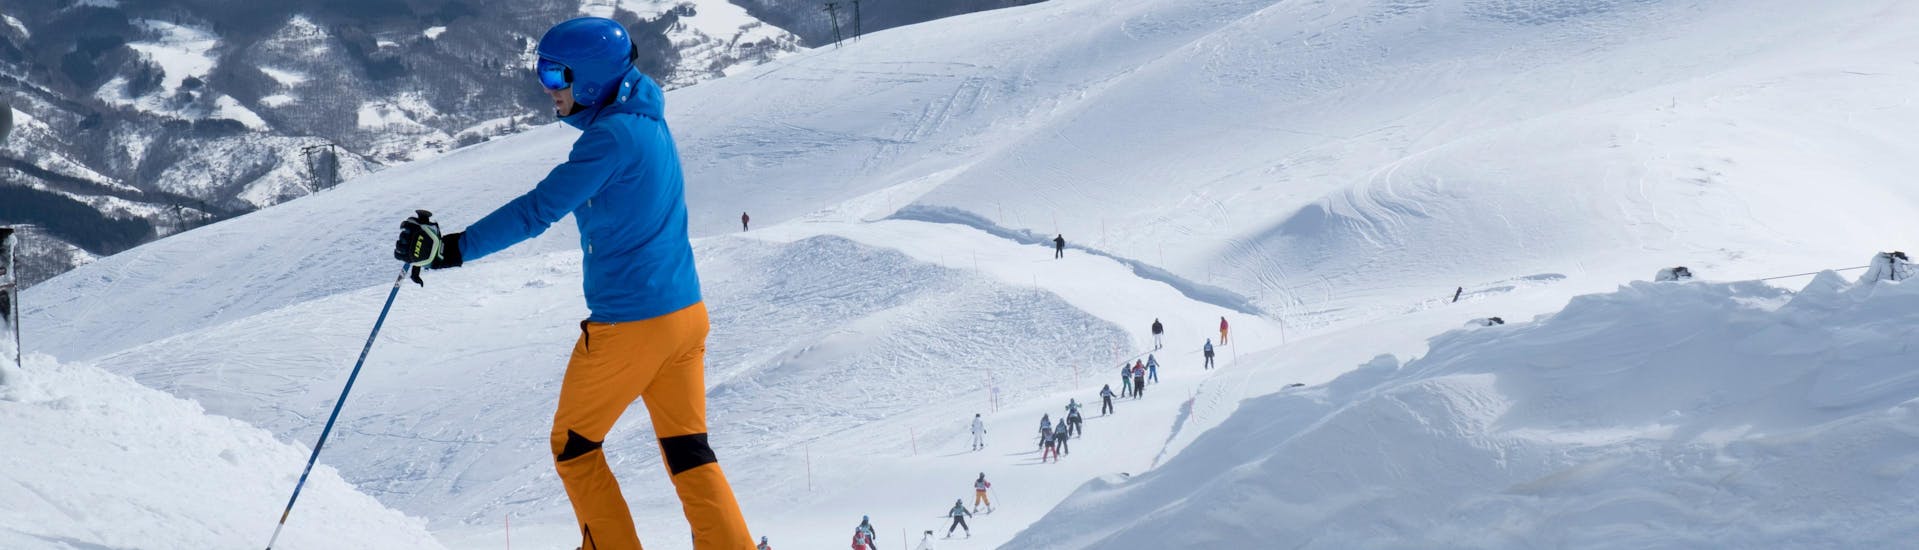 Uno sciatore scende le piste della stazione sciistica dell'Abetone in Val di Luce dove la scuola di sci impartisce lezioni di sci.